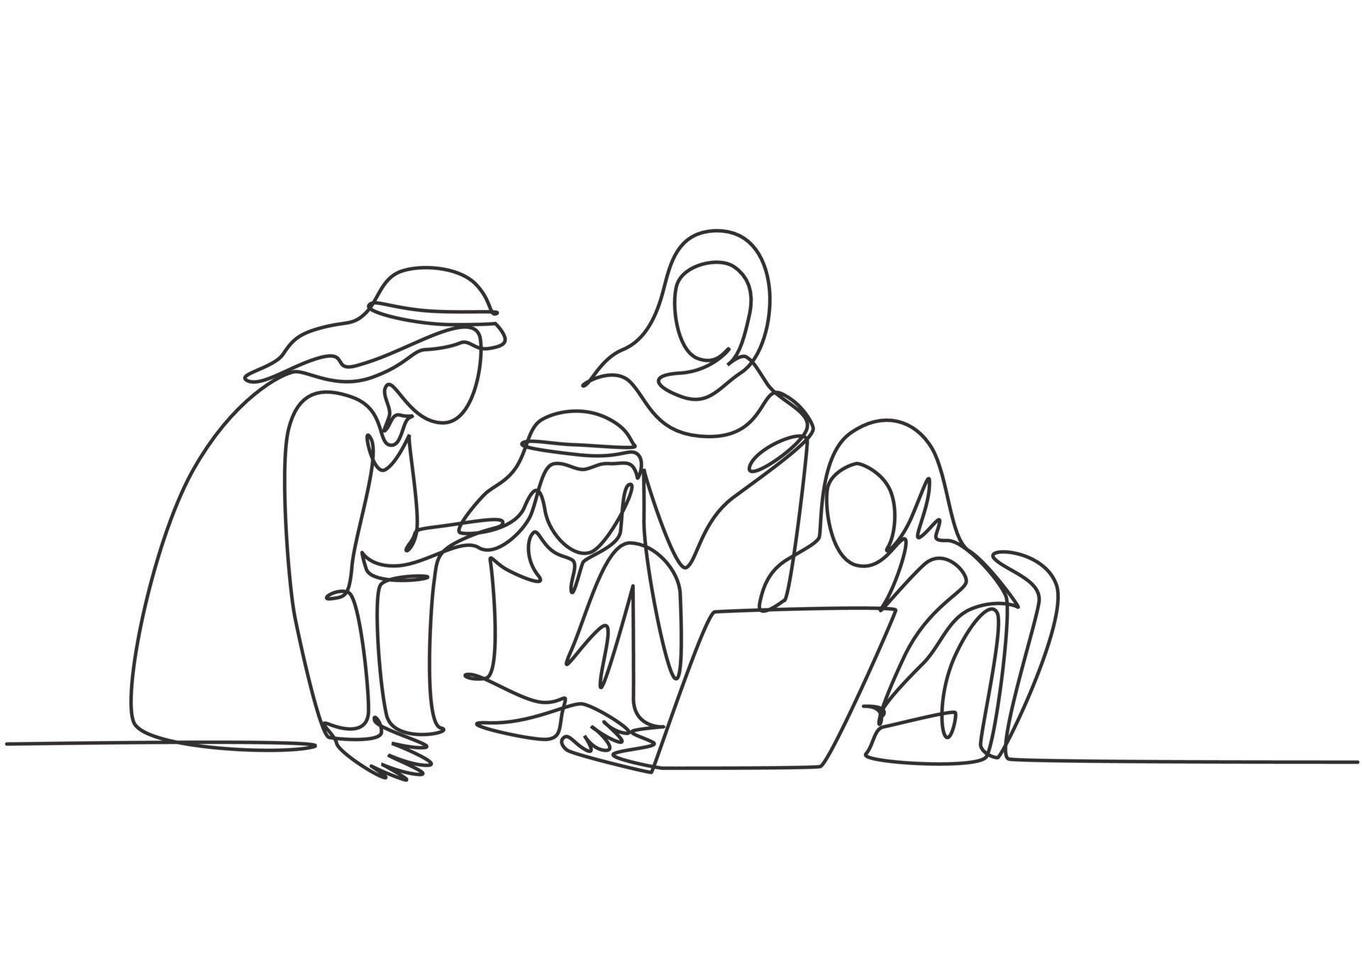 één enkele lijntekening van een jong moslimbedrijfsleven dat samen een sociaal project bespreekt. saoedi-arabische doek shmag, hoofddoek, ghutra, hijab, sluier. doorlopende lijn tekenen ontwerp vectorillustratie vector